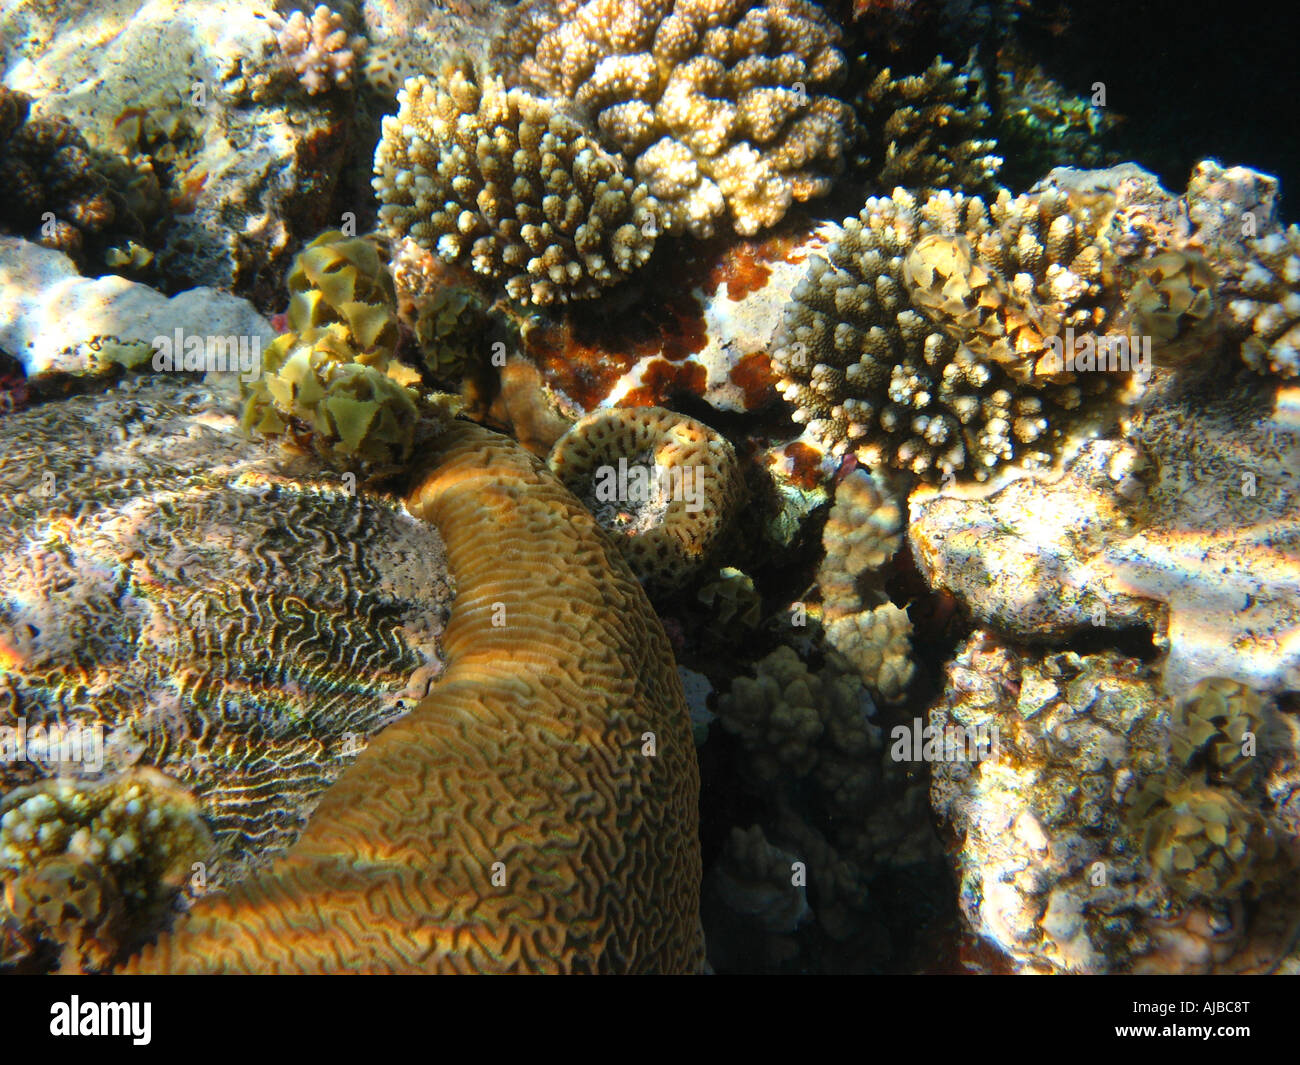 Imagen de buceo submarino de los corales en el Mar Rojo en el cañón cerca del sitio de buceo Dahab Sinaí Egipto Foto de stock